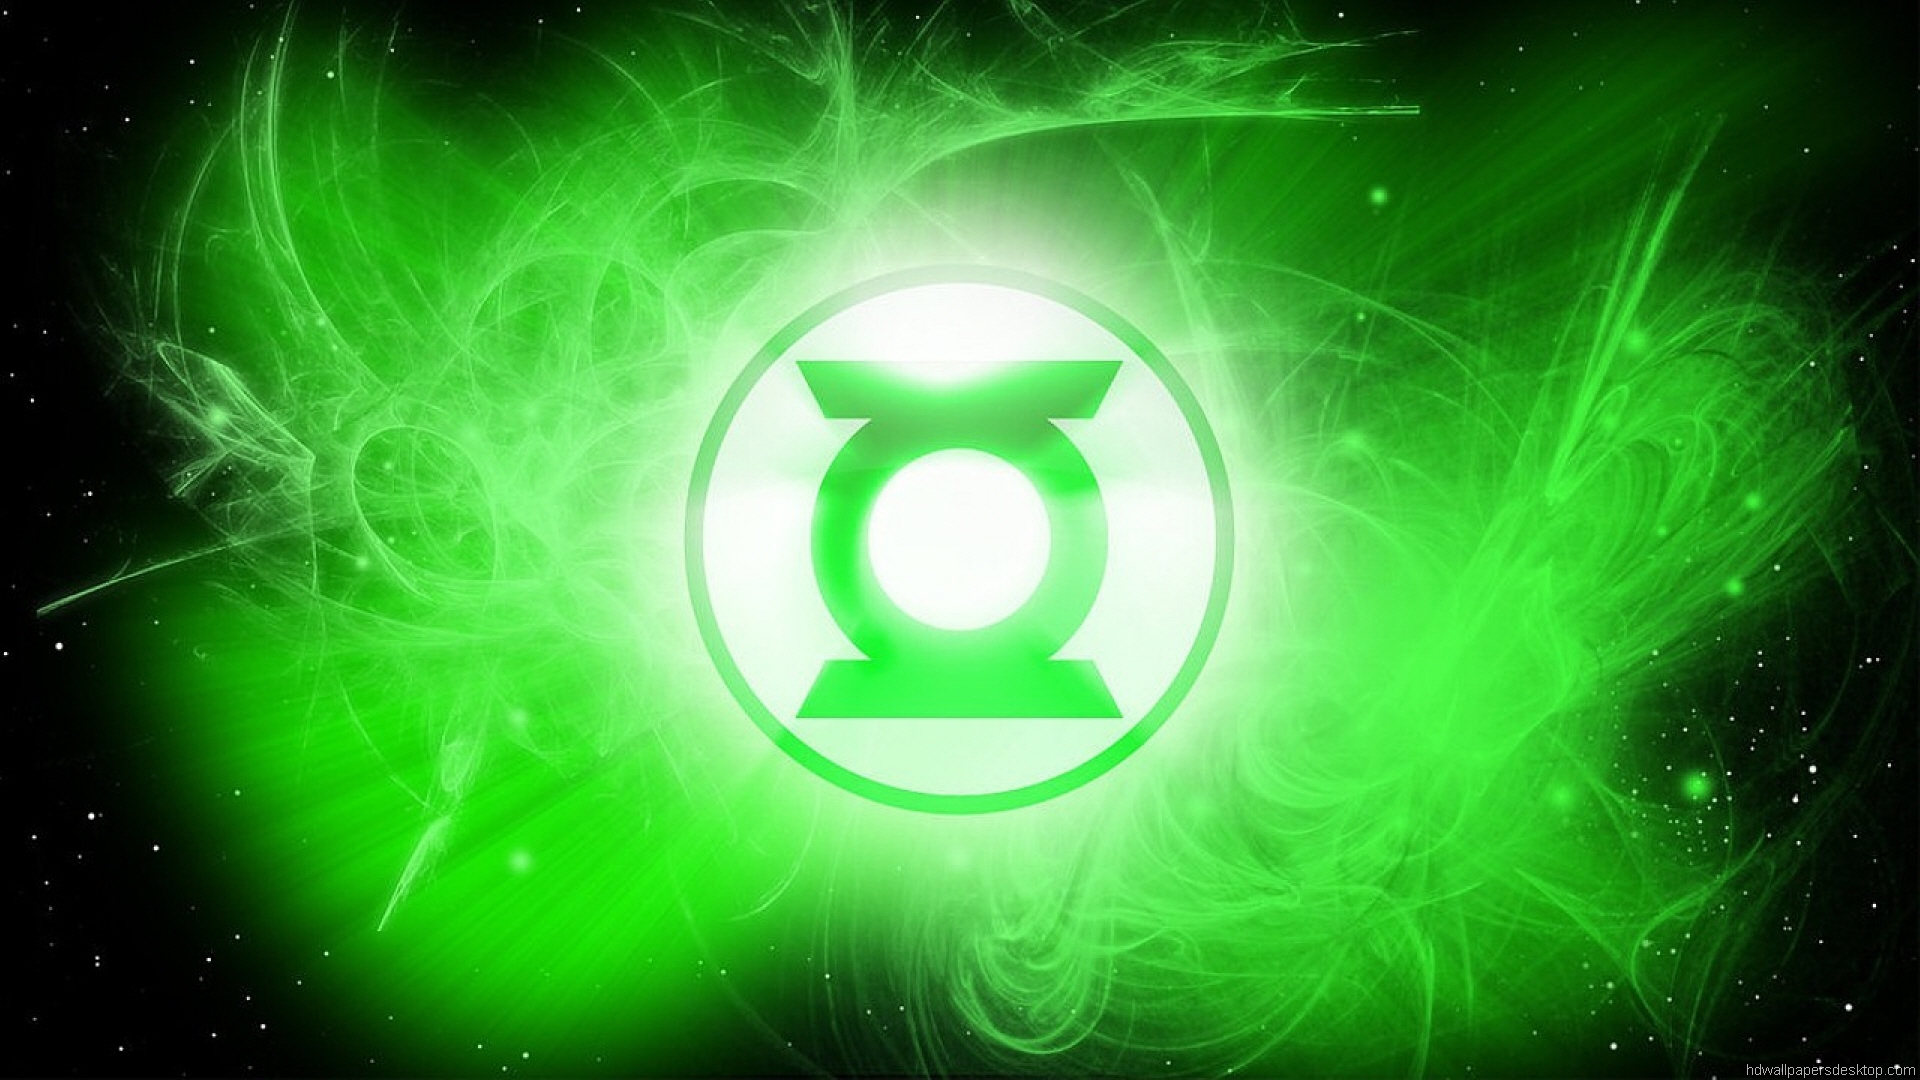 Cool Green Lantern Wallpaper 23540 2411x1576 px